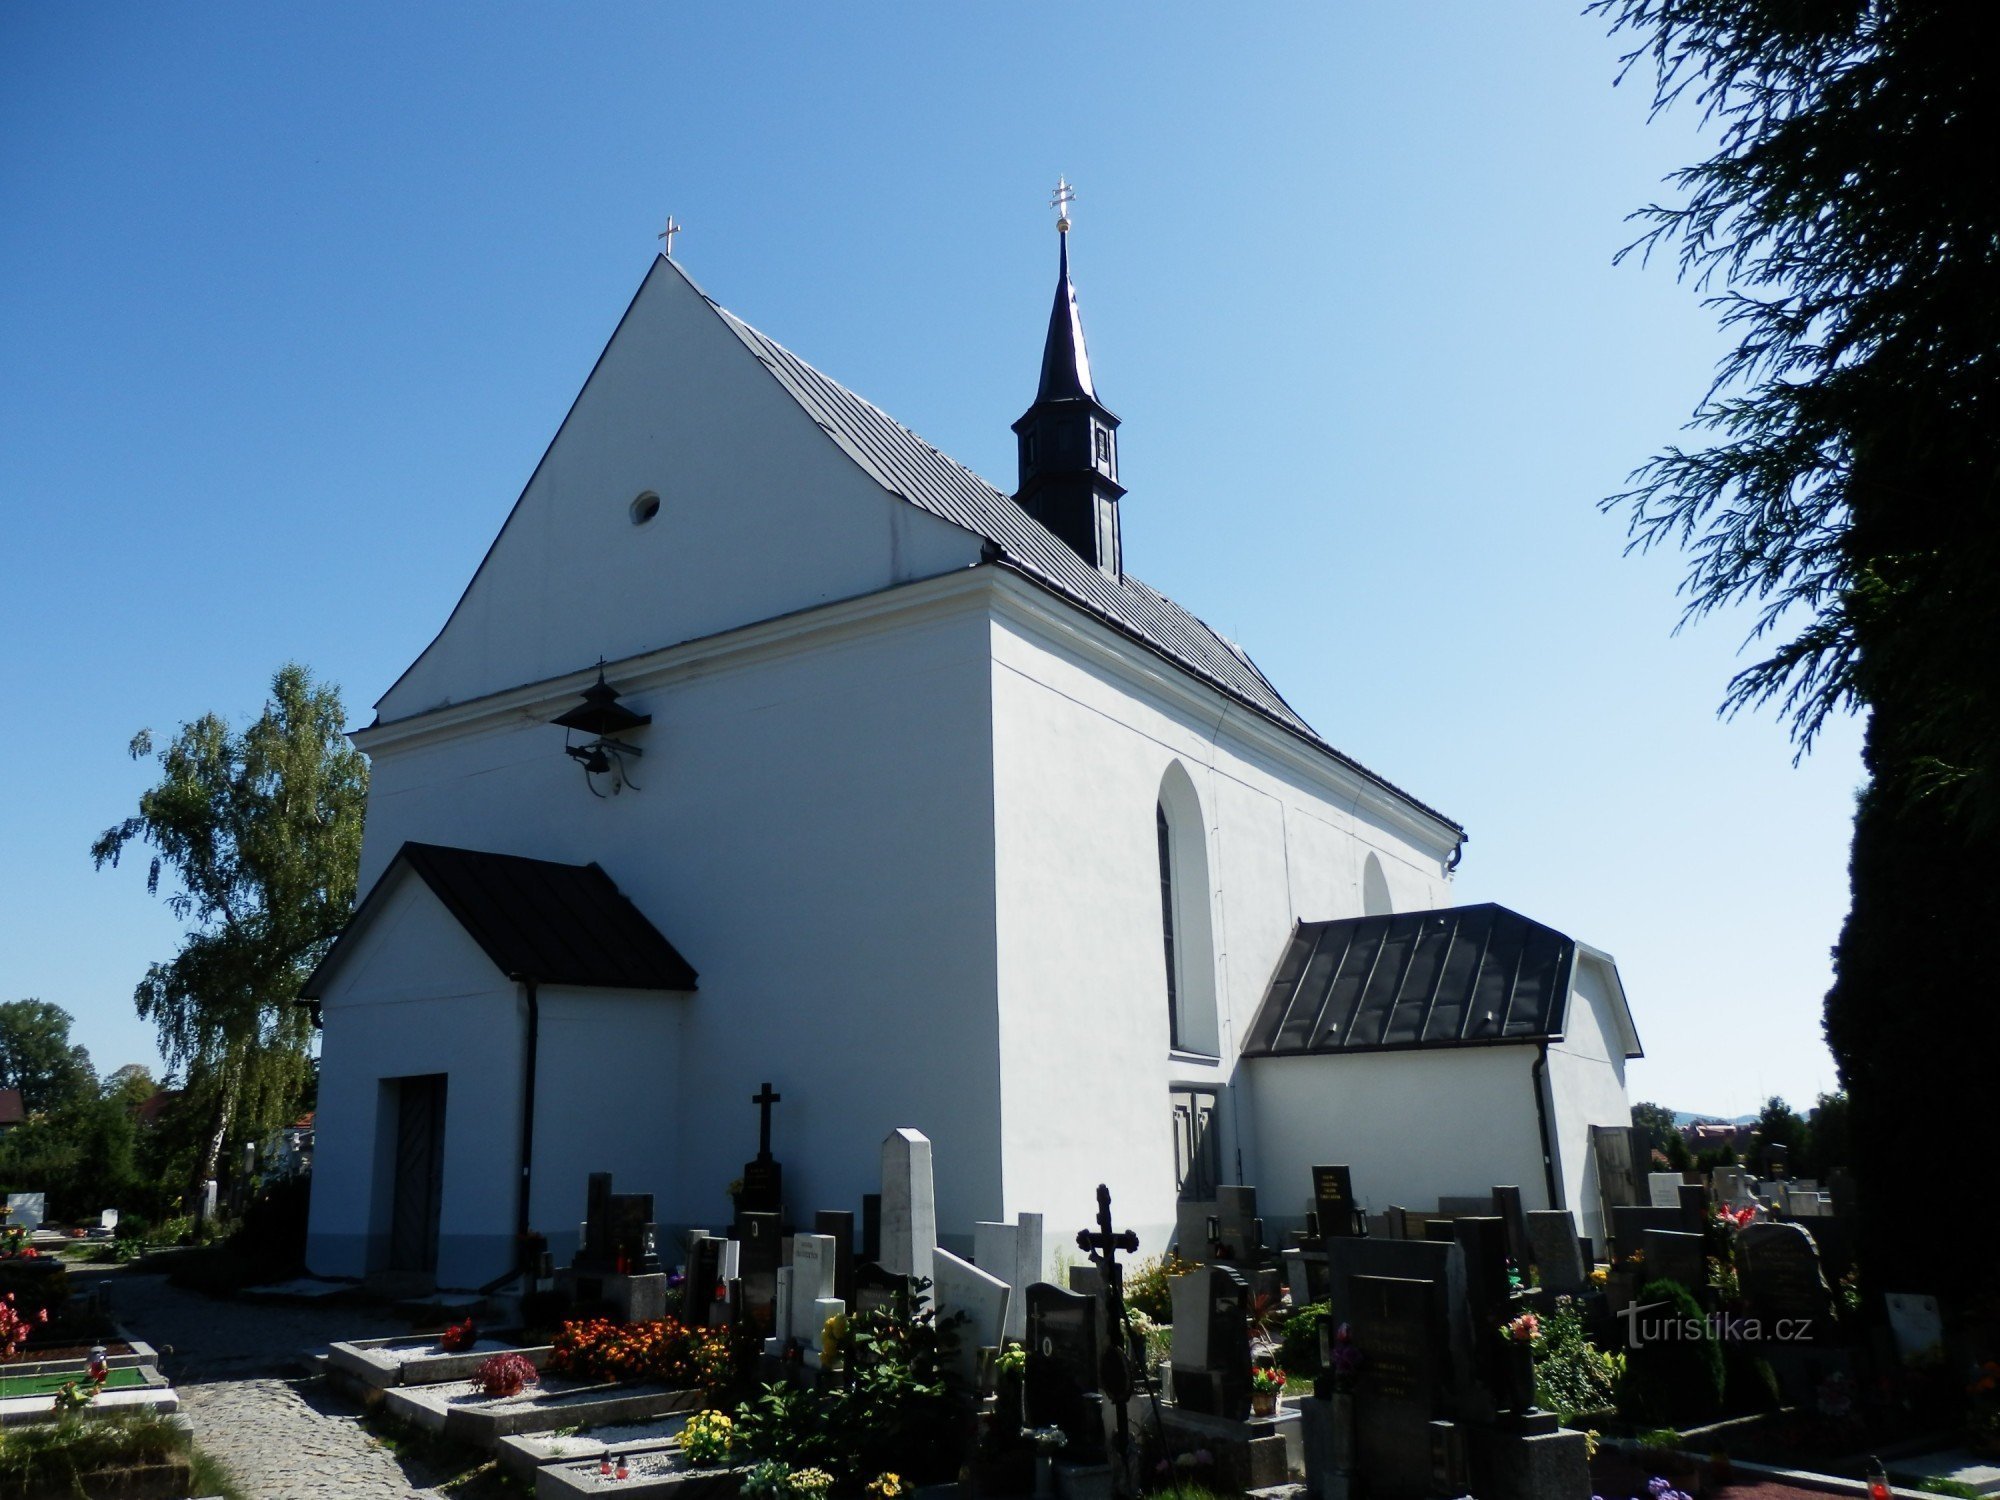 Kościół Świętej Trójcy w Bystrzycy nad Pernštejnem